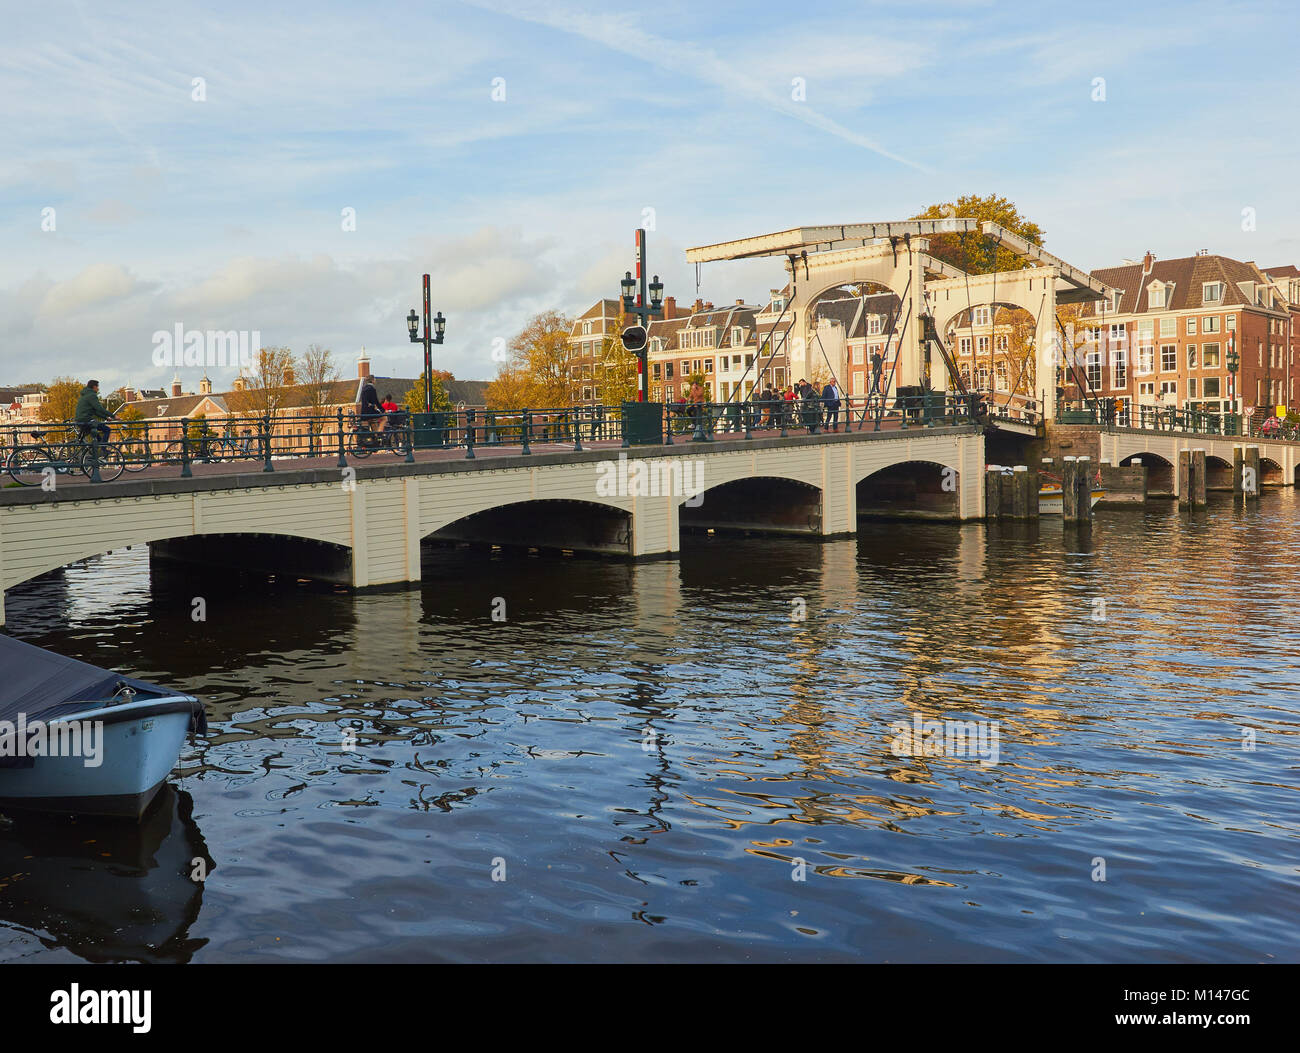 Magere Brug (pont maigre) un piéton location bascule bridge sur la rivière Amstel, Amsterdam, Pays-Bas Banque D'Images